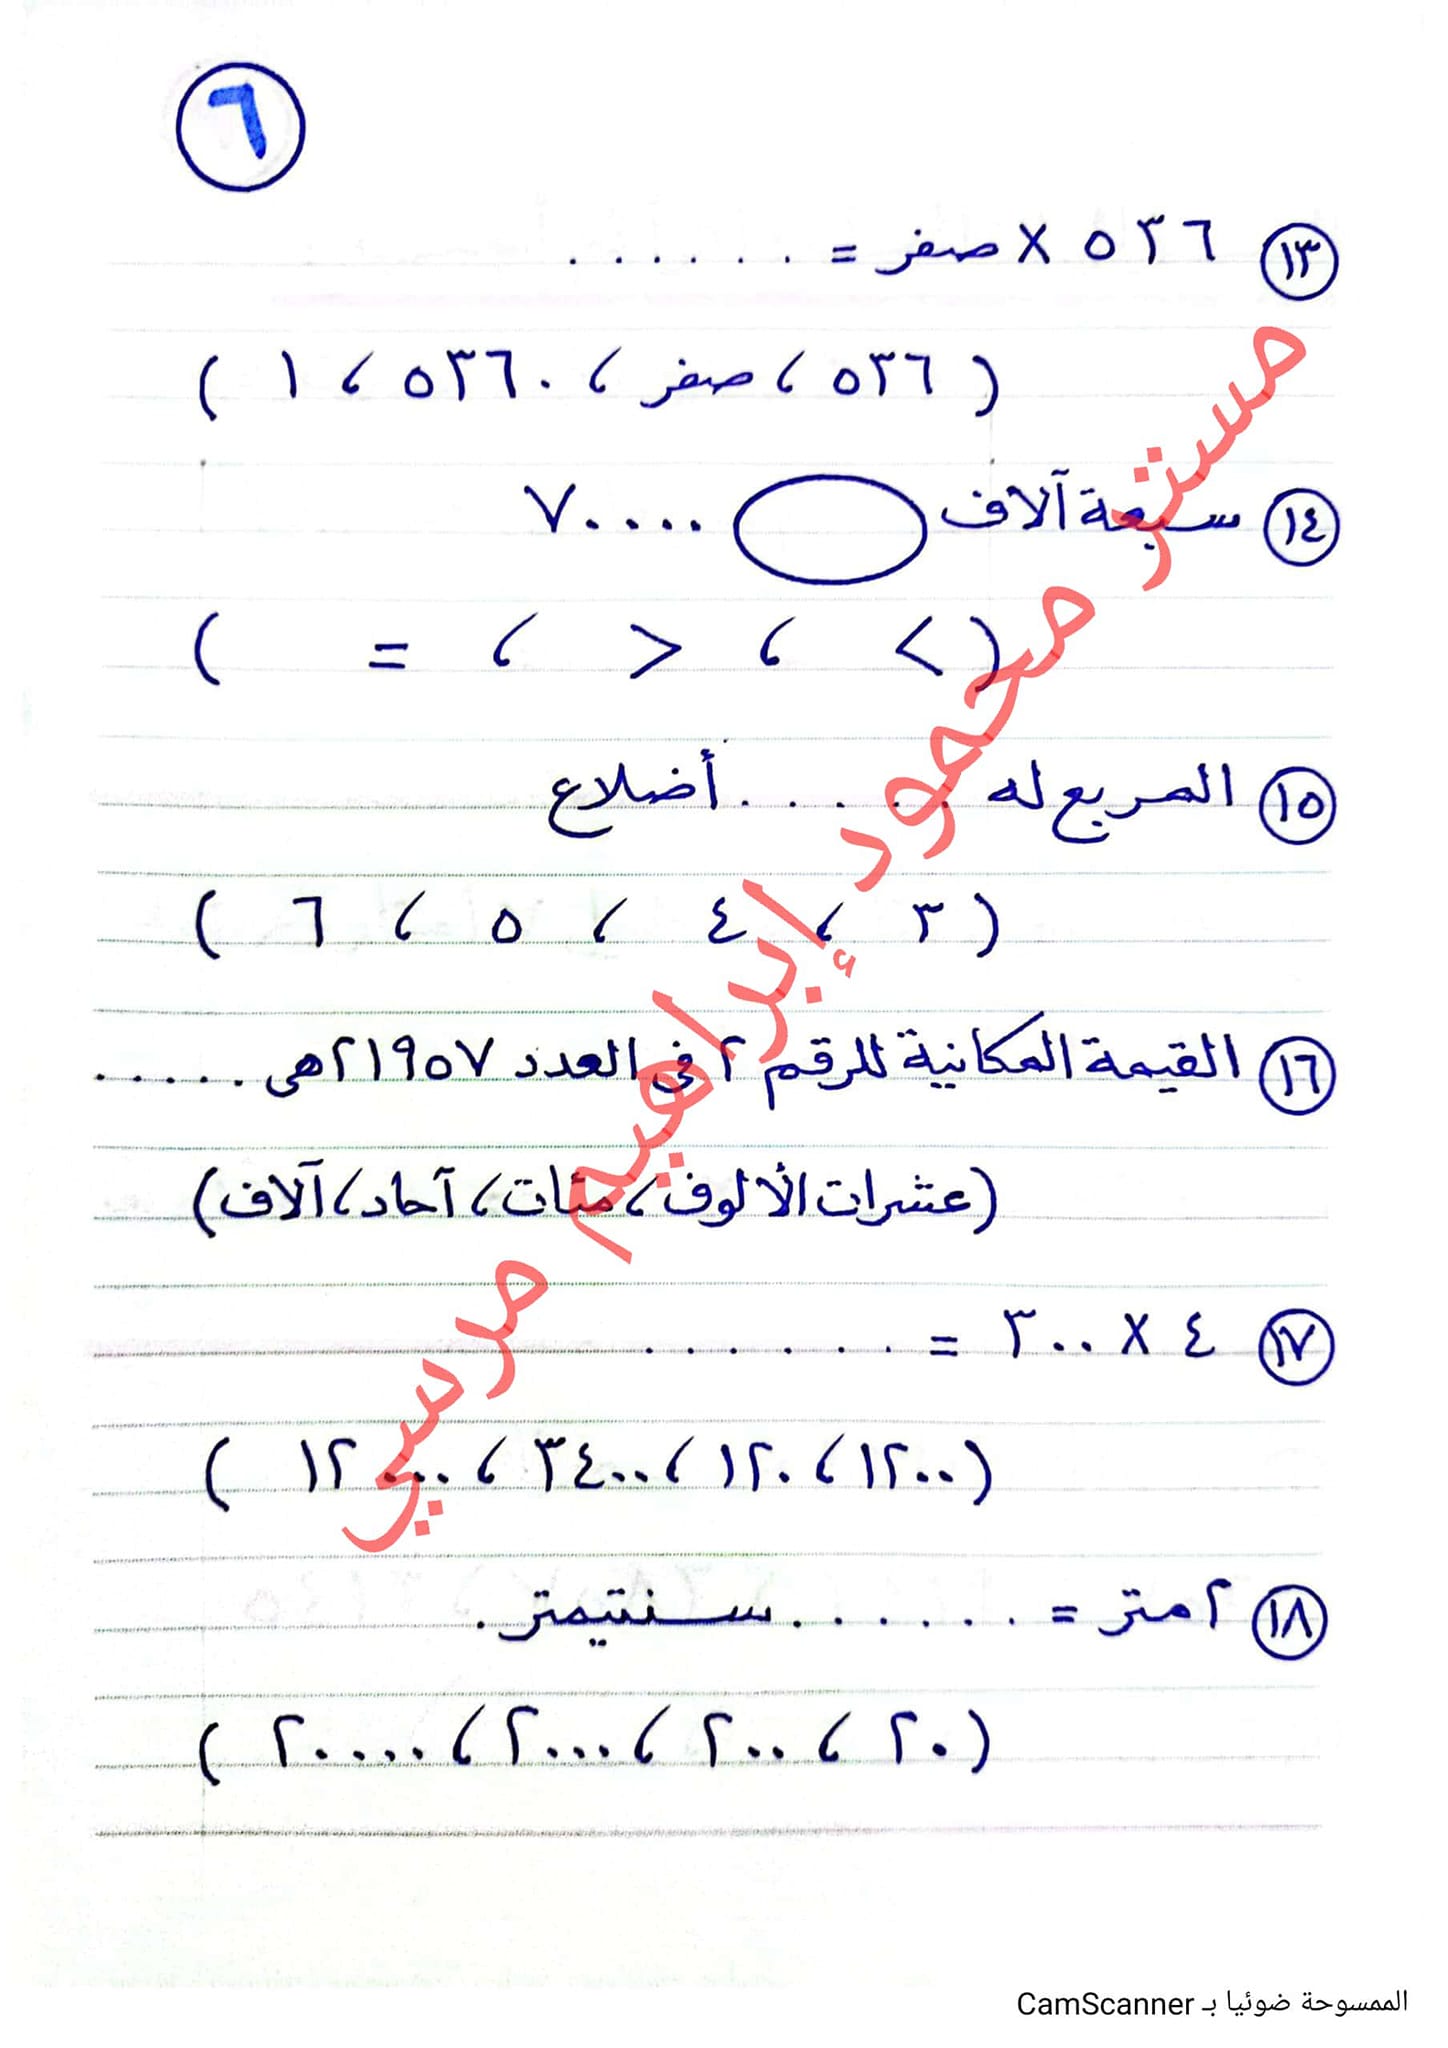 مدرس اول المراجعة النهائية في الرياضيات للصف الثالث الابتدائي على منهج الفصل الدراسي الاول أ/ محمود مرسى	